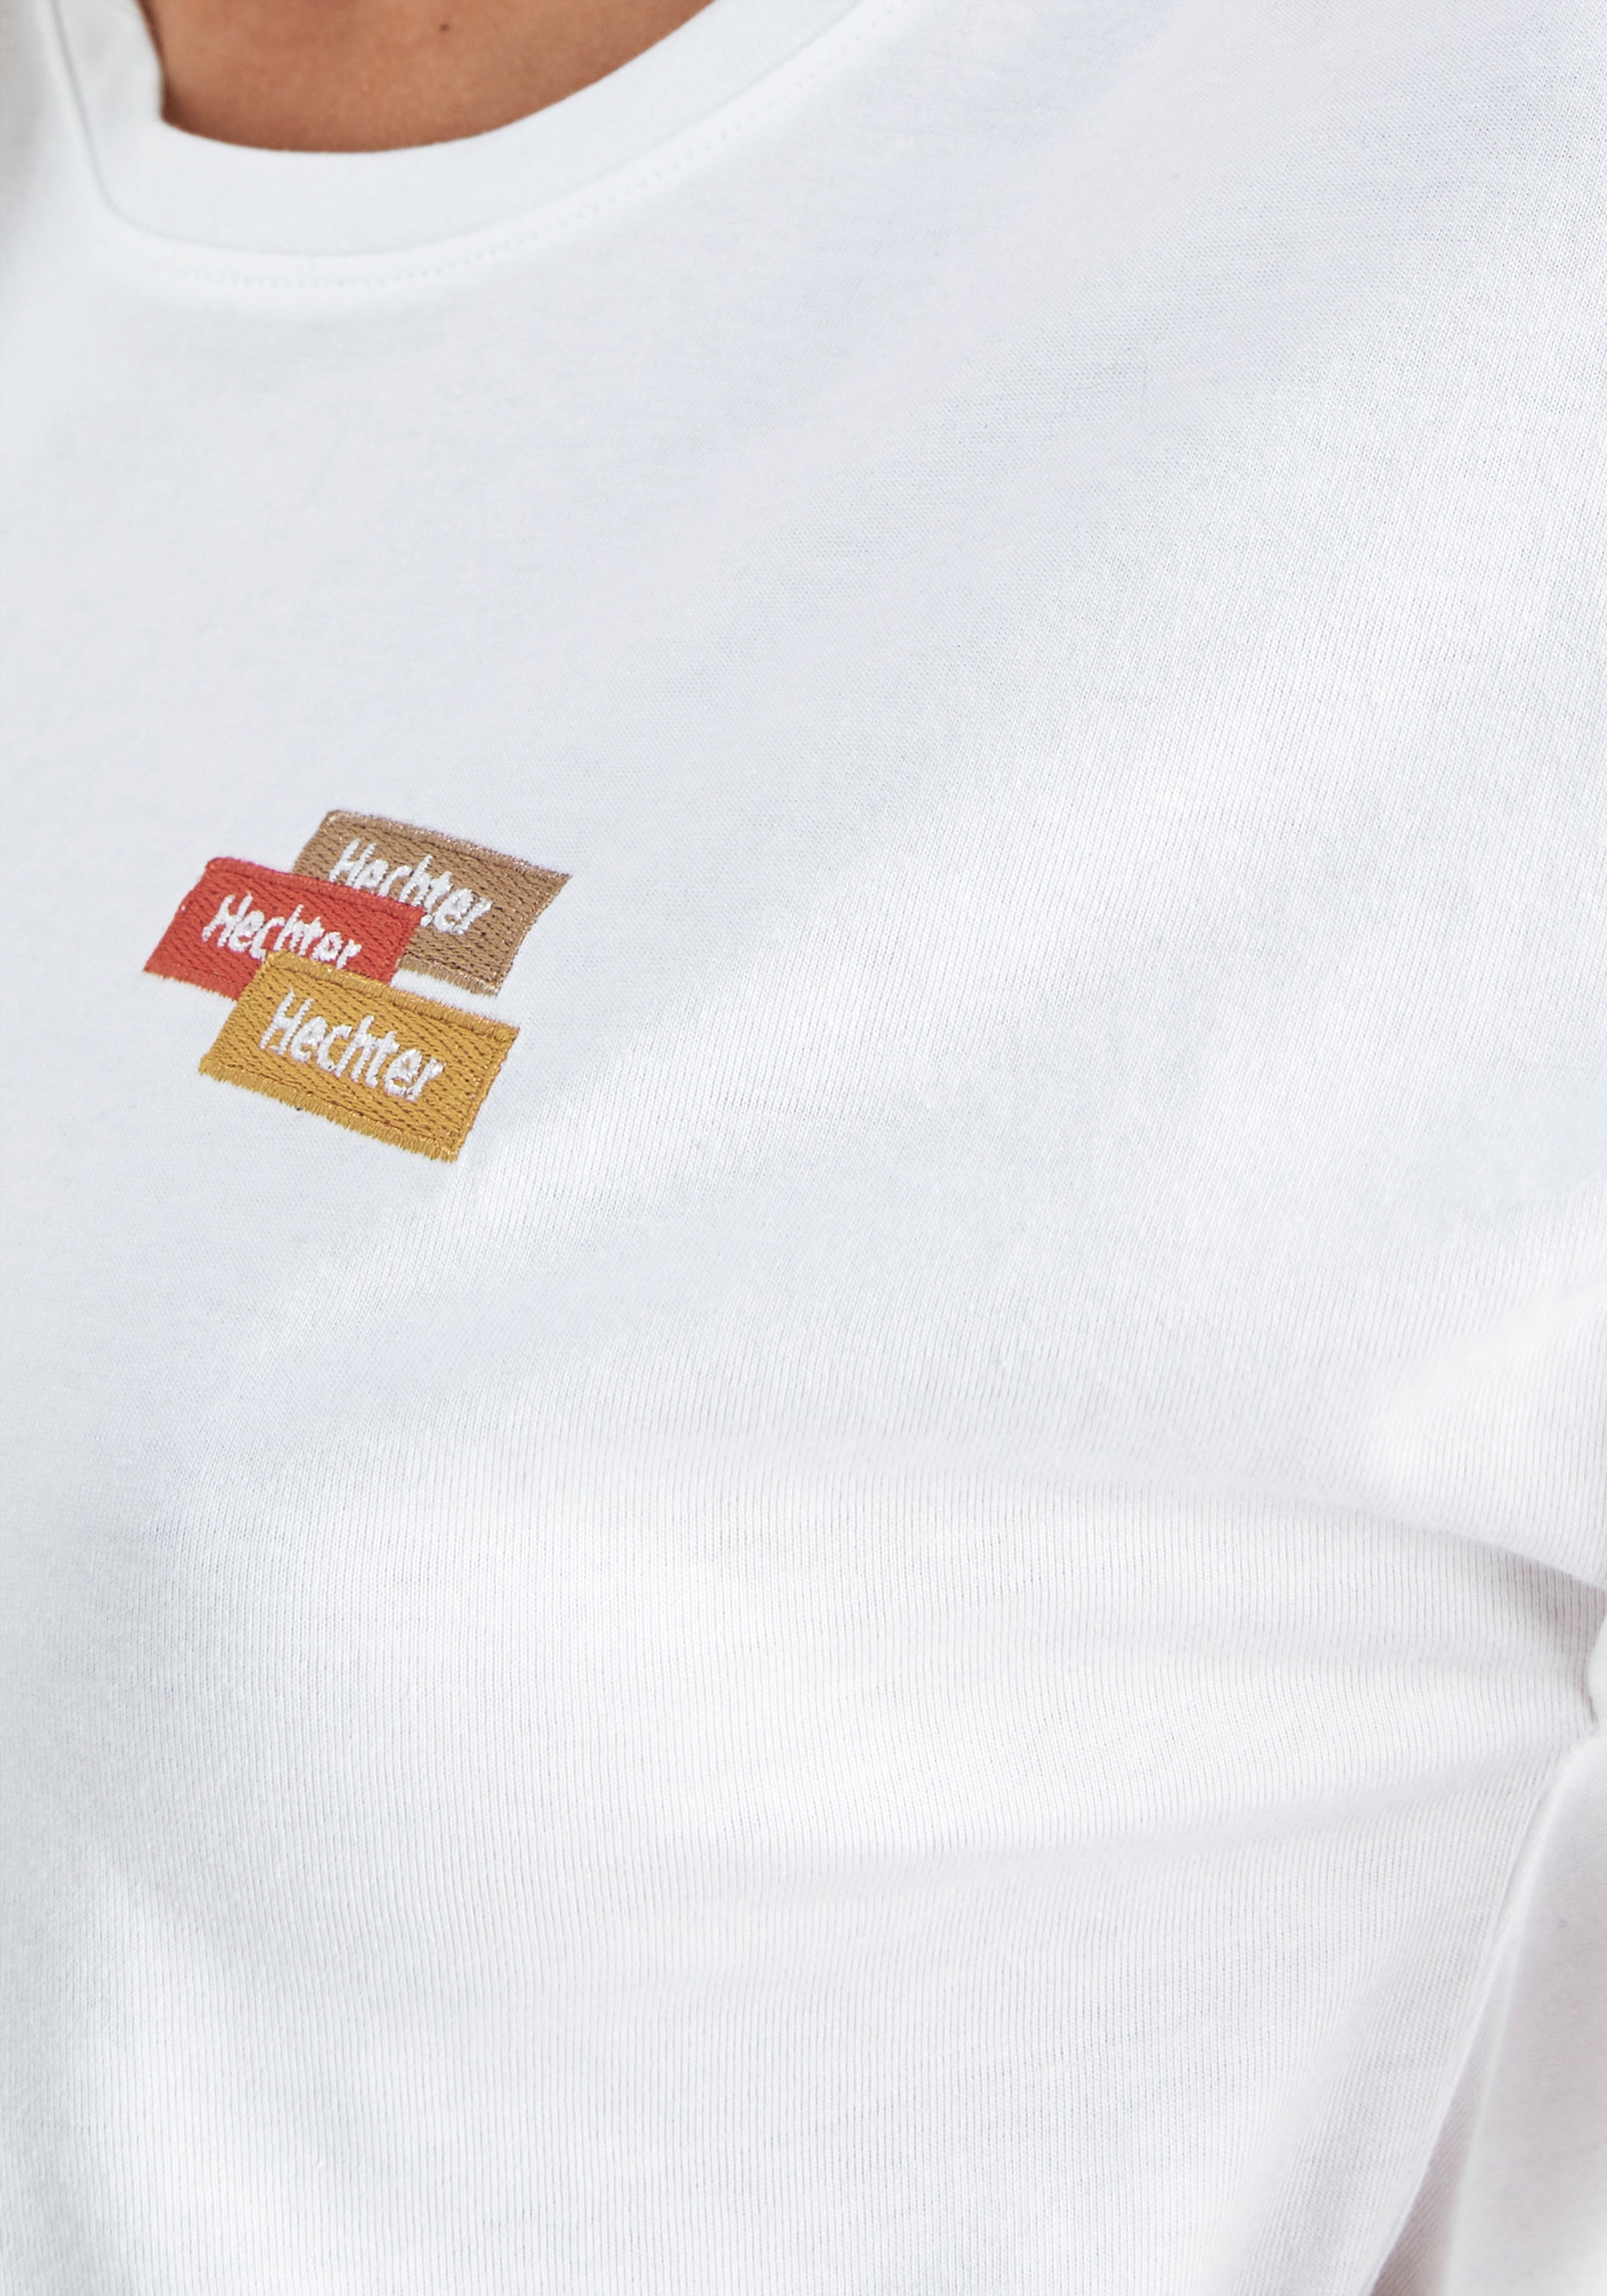 PARIS der dezenter online Schweiz Brust bei auf HECHTER mit Jelmoli-Versand T-Shirt, shoppen Logostickerei